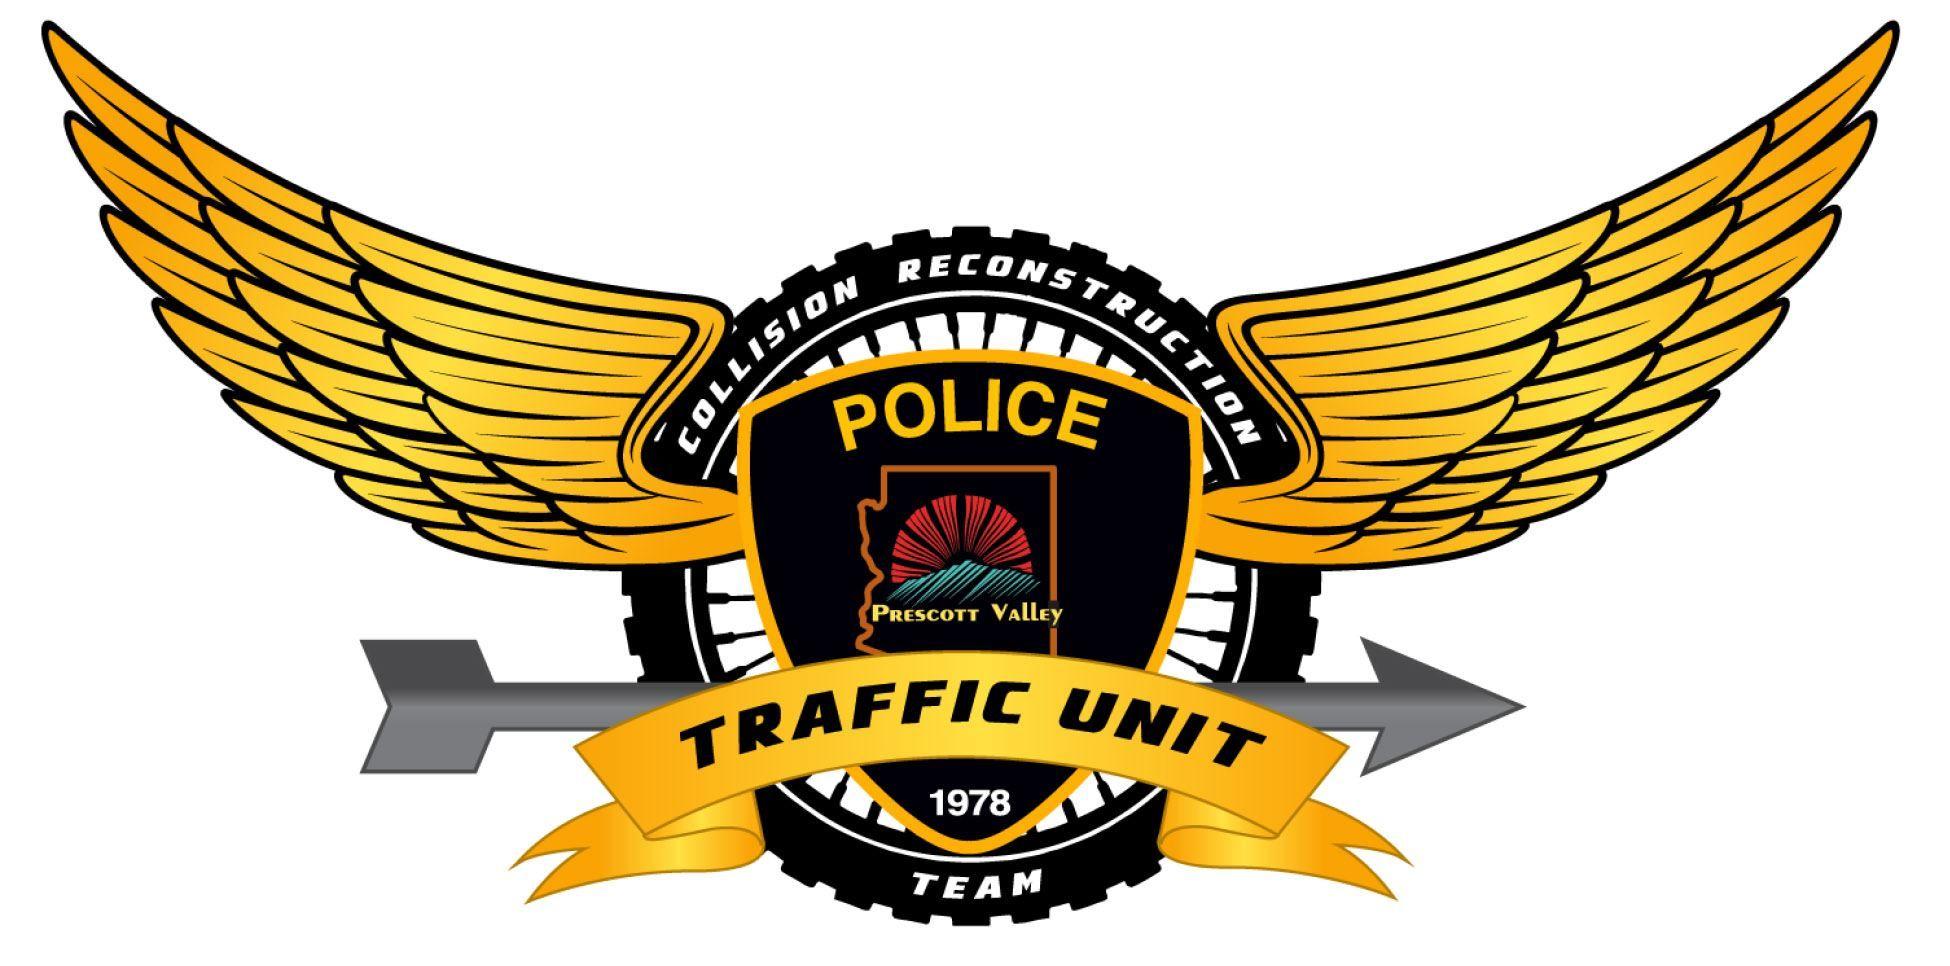 Traffic Logo - Traffic Section. Prescott Valley, AZ